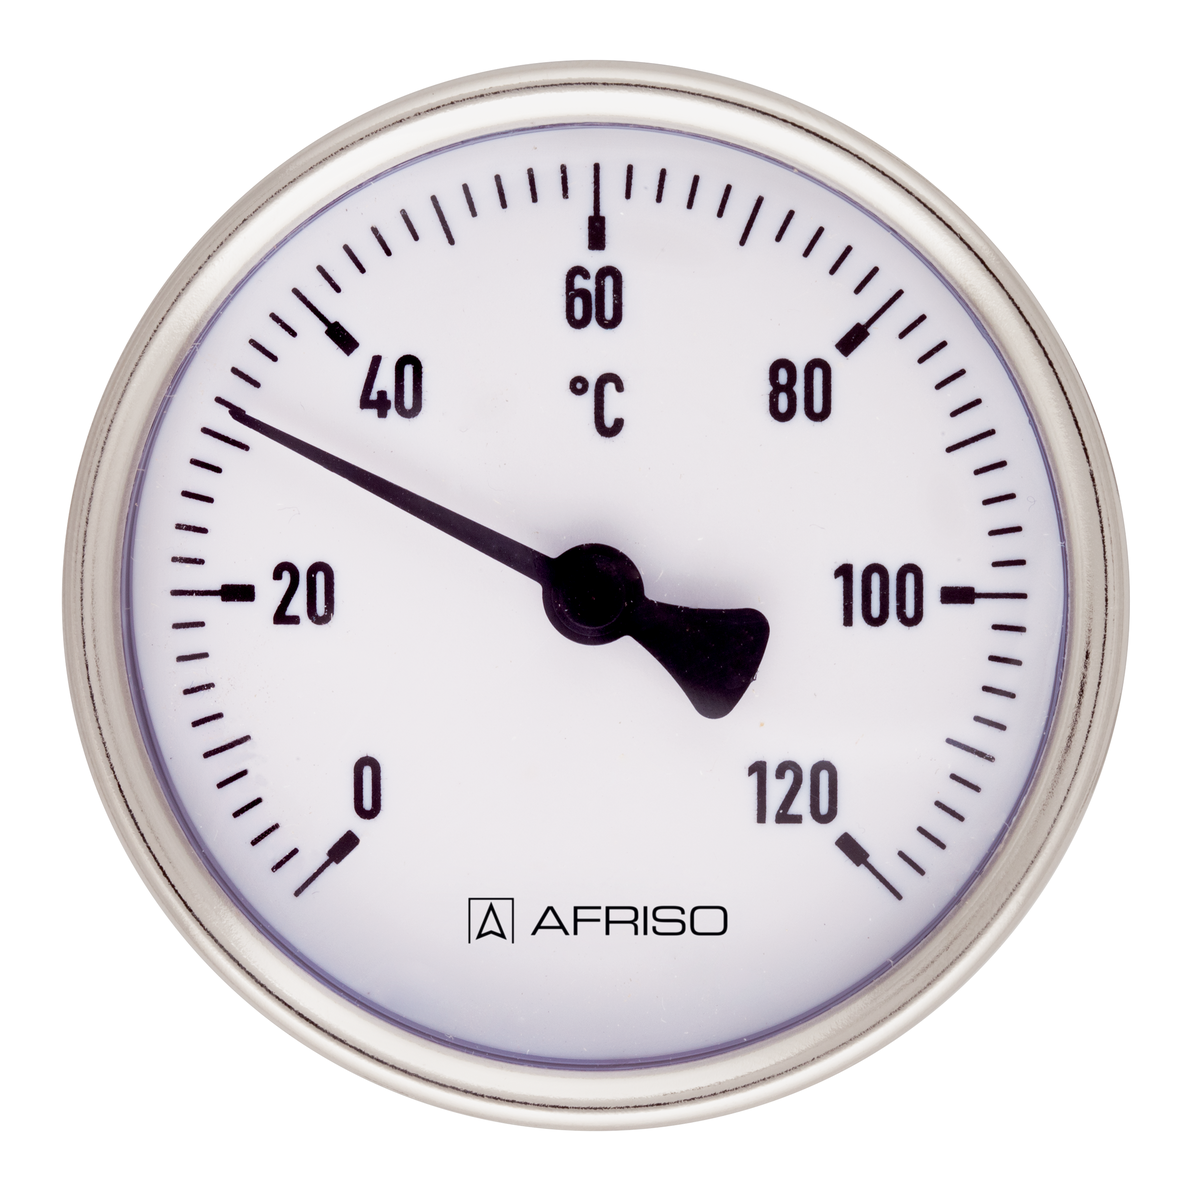 Bimetalový teploměr BiTh 100 ST, Ø 100 mm, -20 ÷ 60 °C, délka jímky 63 mm, G½", axiální - AFRISO.CZ